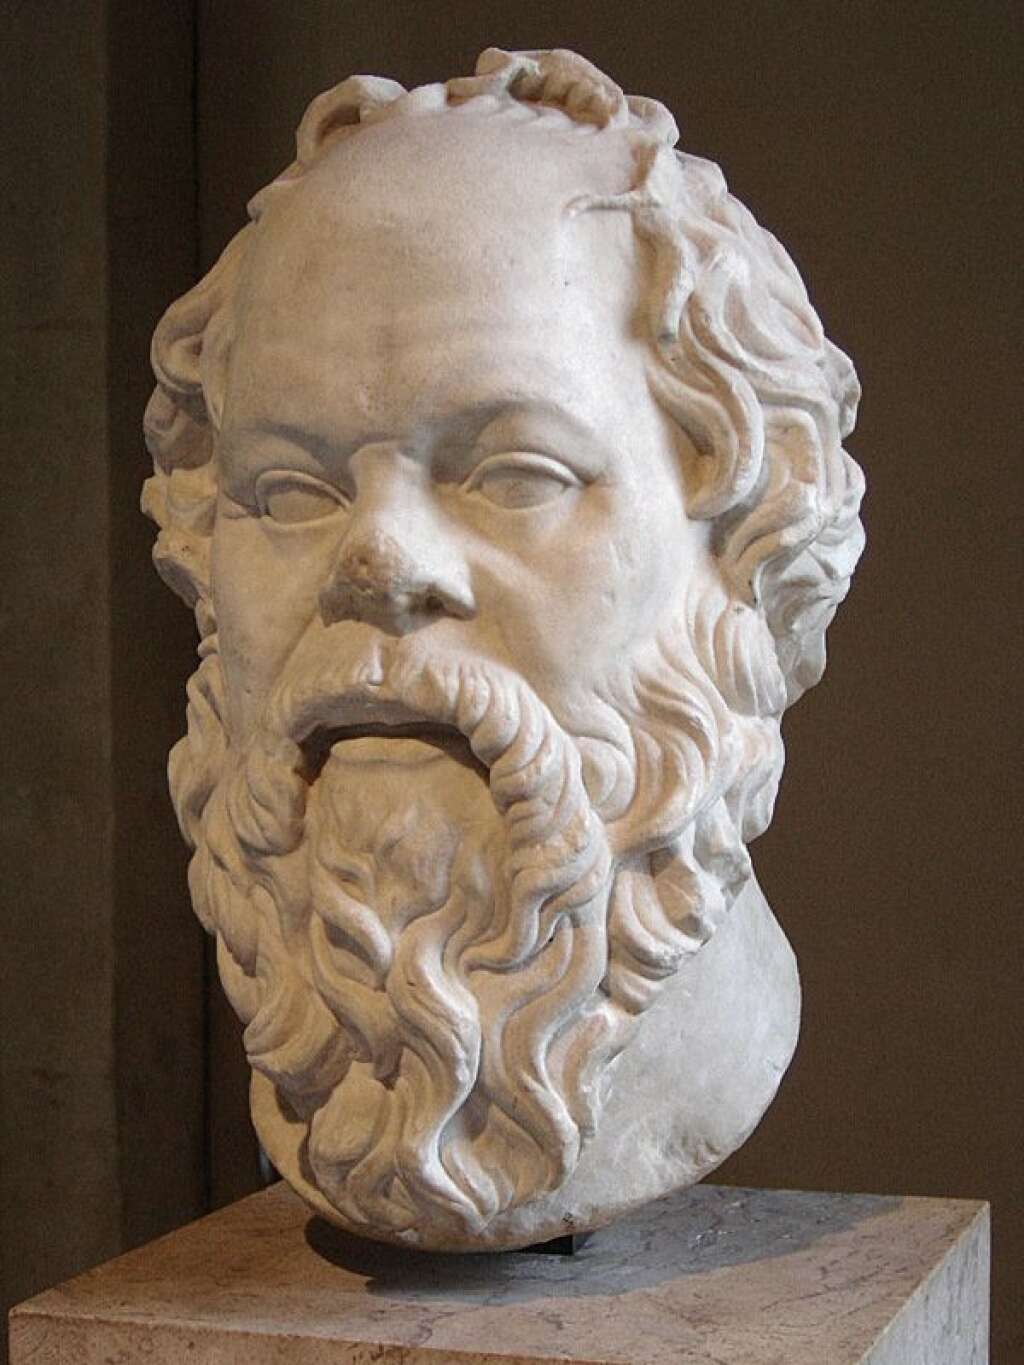 Socrate  (-470 à -399) - L'amour de Socrate pour les jeunes hommes était connu. Il eut notamment pour amant le jeune Alcibiade, qui le pourchassait sans cesse, comme il est décrit dans Le Banquet : "L'amour de cet homme n'est pas pour moi un médiocre embarras (...). Depuis l'époque où j'ai commencé à l'aimer, je ne puis plus me permettre de regarder un beau garçon ni de causer avec lui sans que, dans sa fureur jalouse, il ne vienne me faire mille scènes extravagantes, m'injuriant, et s'abstenant à peine de porter les mains sur moi"